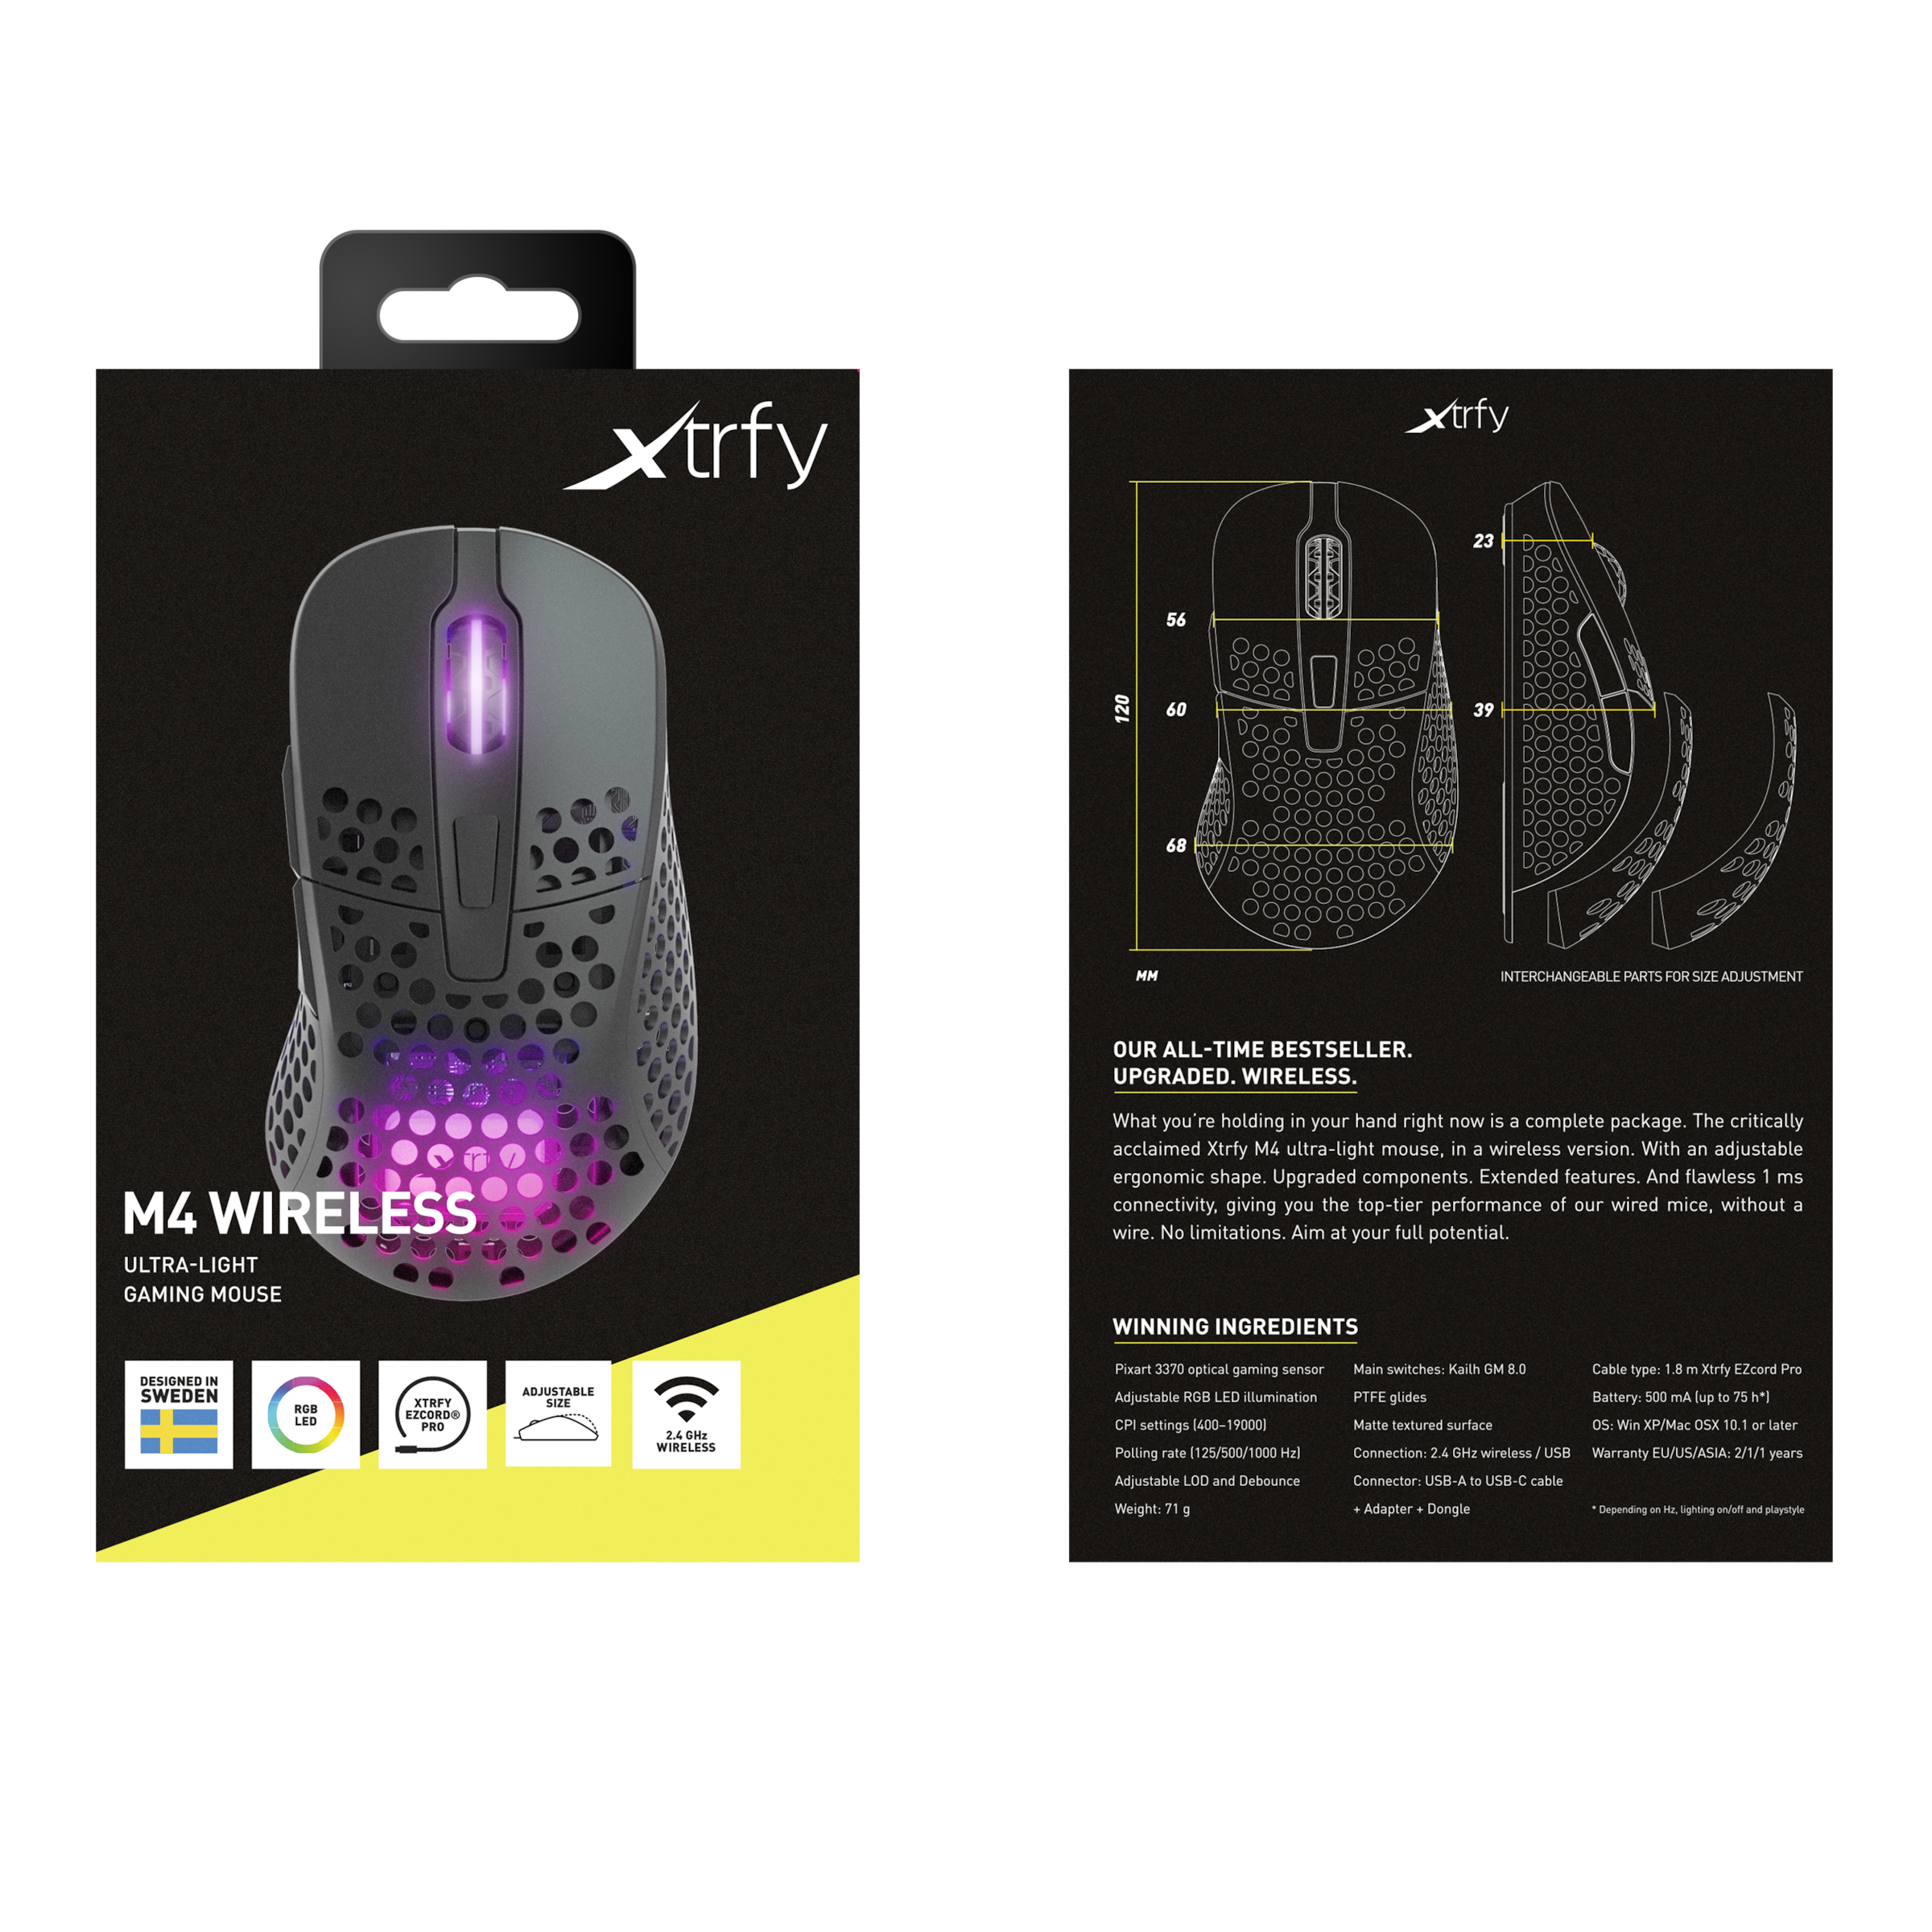 Cherry Rechnung Funk, auf bestellen Wireless ultraleichte Gaming-Maus »M4 Gaming-Maus RGB«, Xtrfy